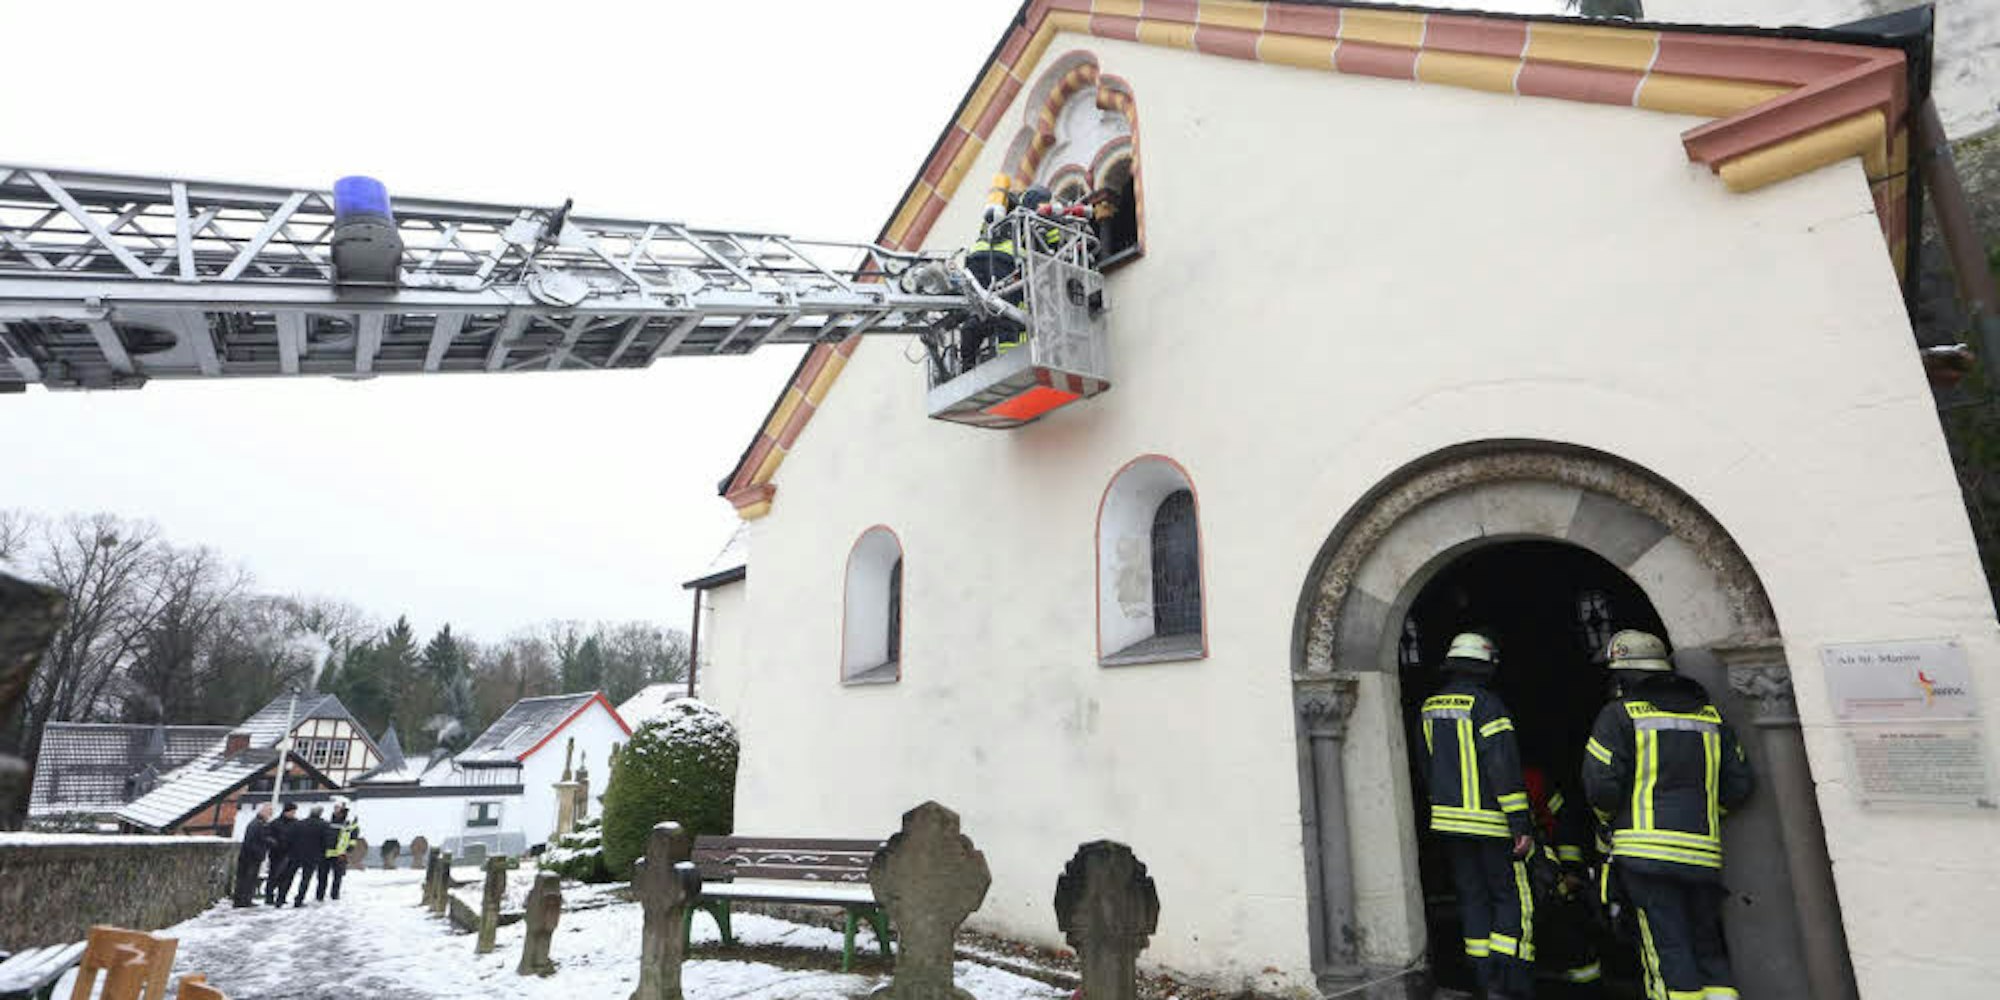 Mit Hilfe einer Drehleiter kontrollierten Feuerwehrleute den Dachstuhl der Kirche nach Glutnestern.